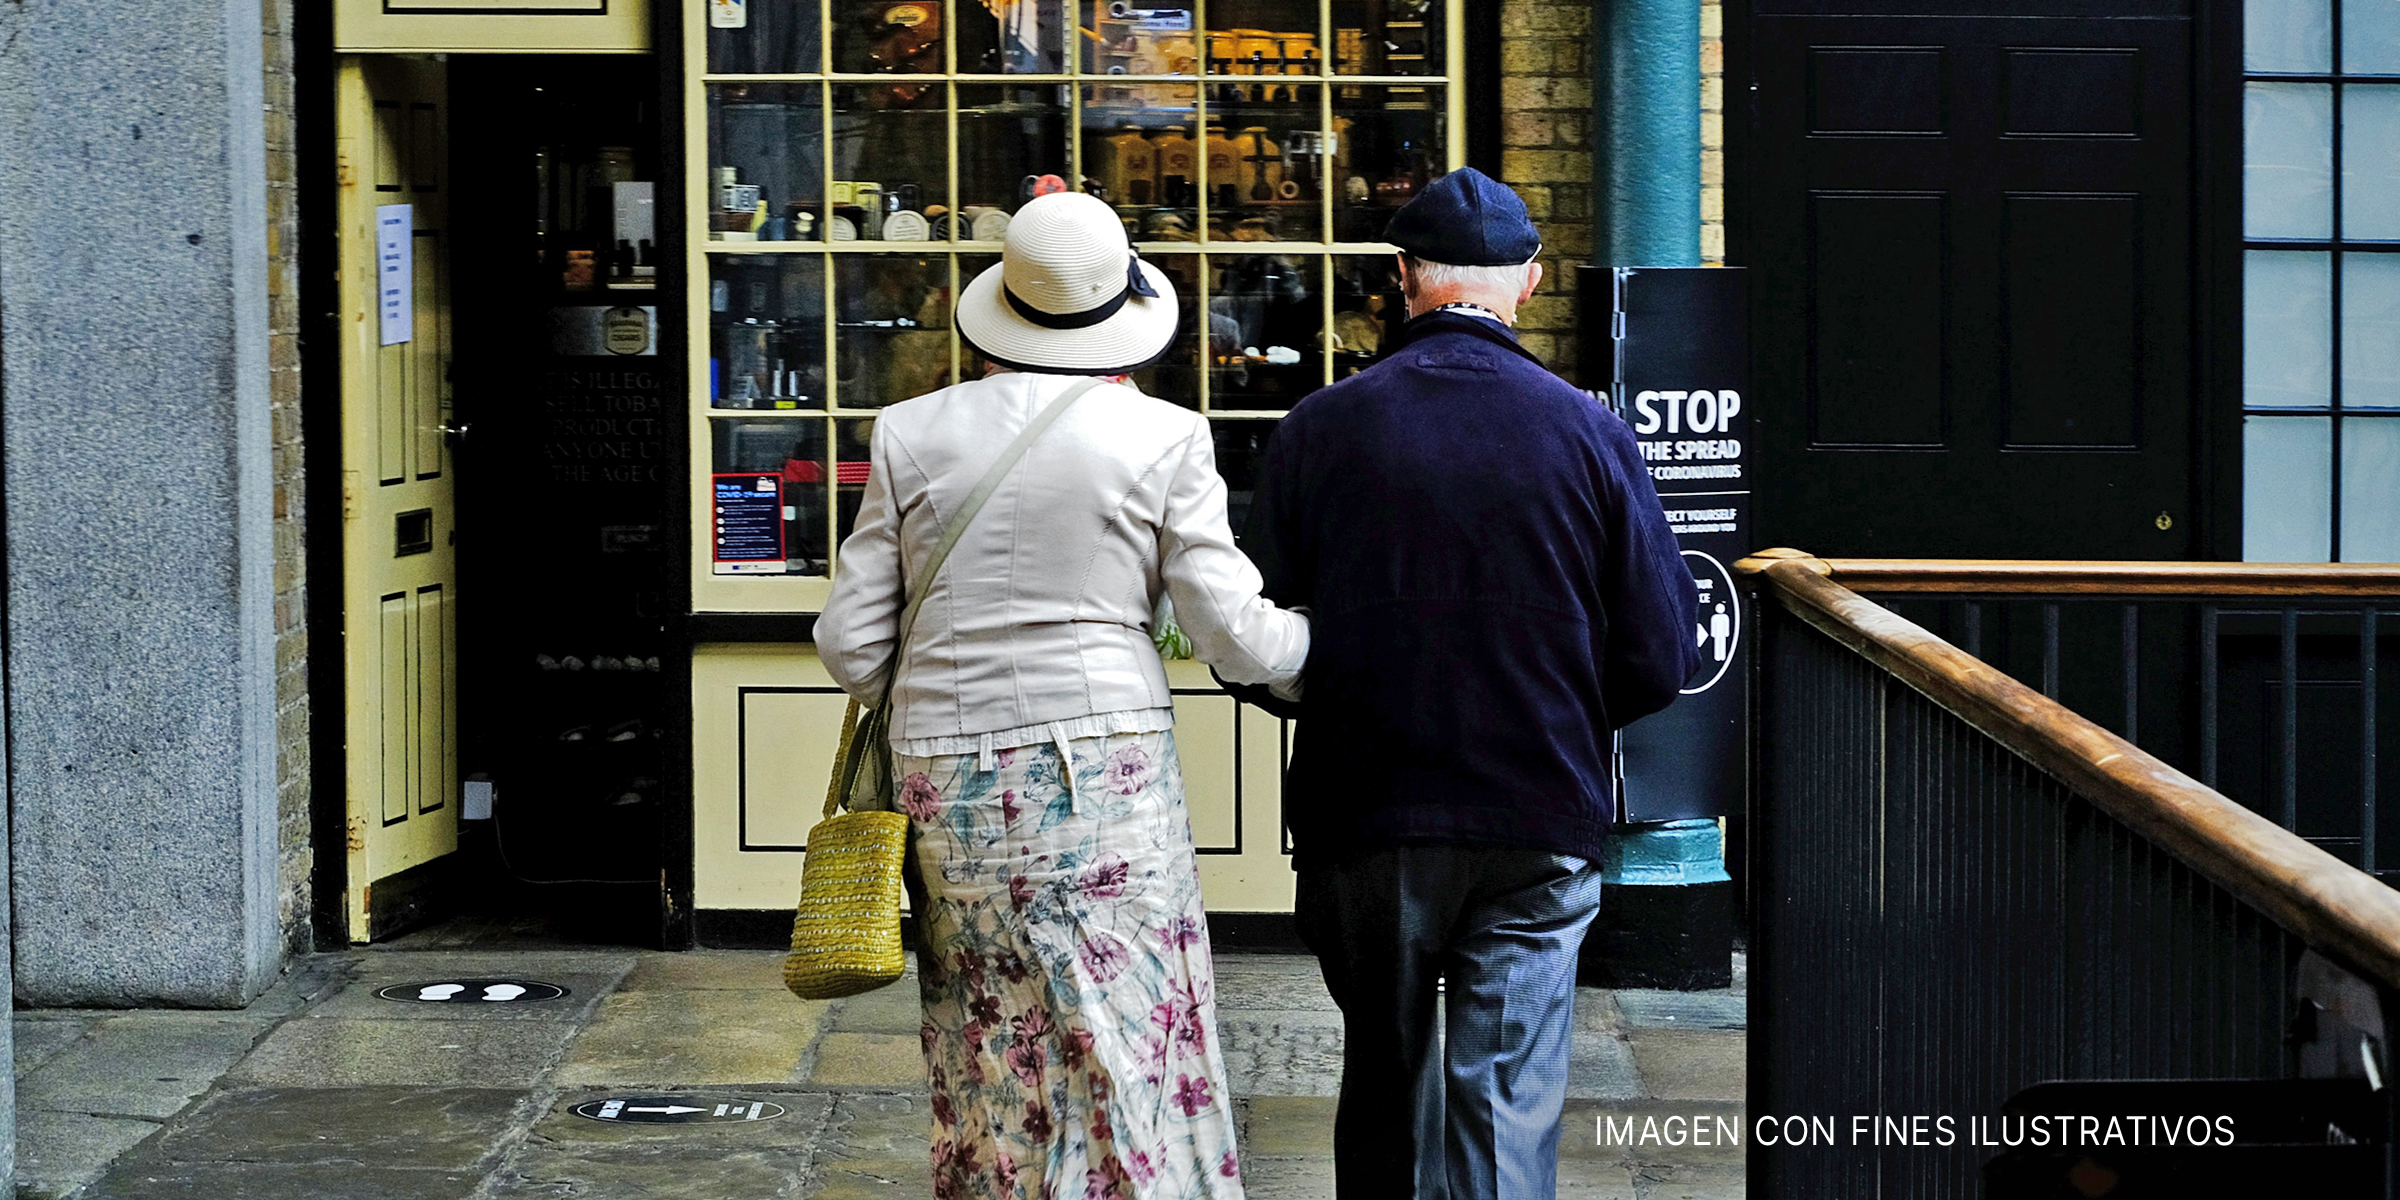 Pareja mayor caminando a una tienda tomada del brazo. | Foto: Flickr.com/garryknight (CC BY 2.0)